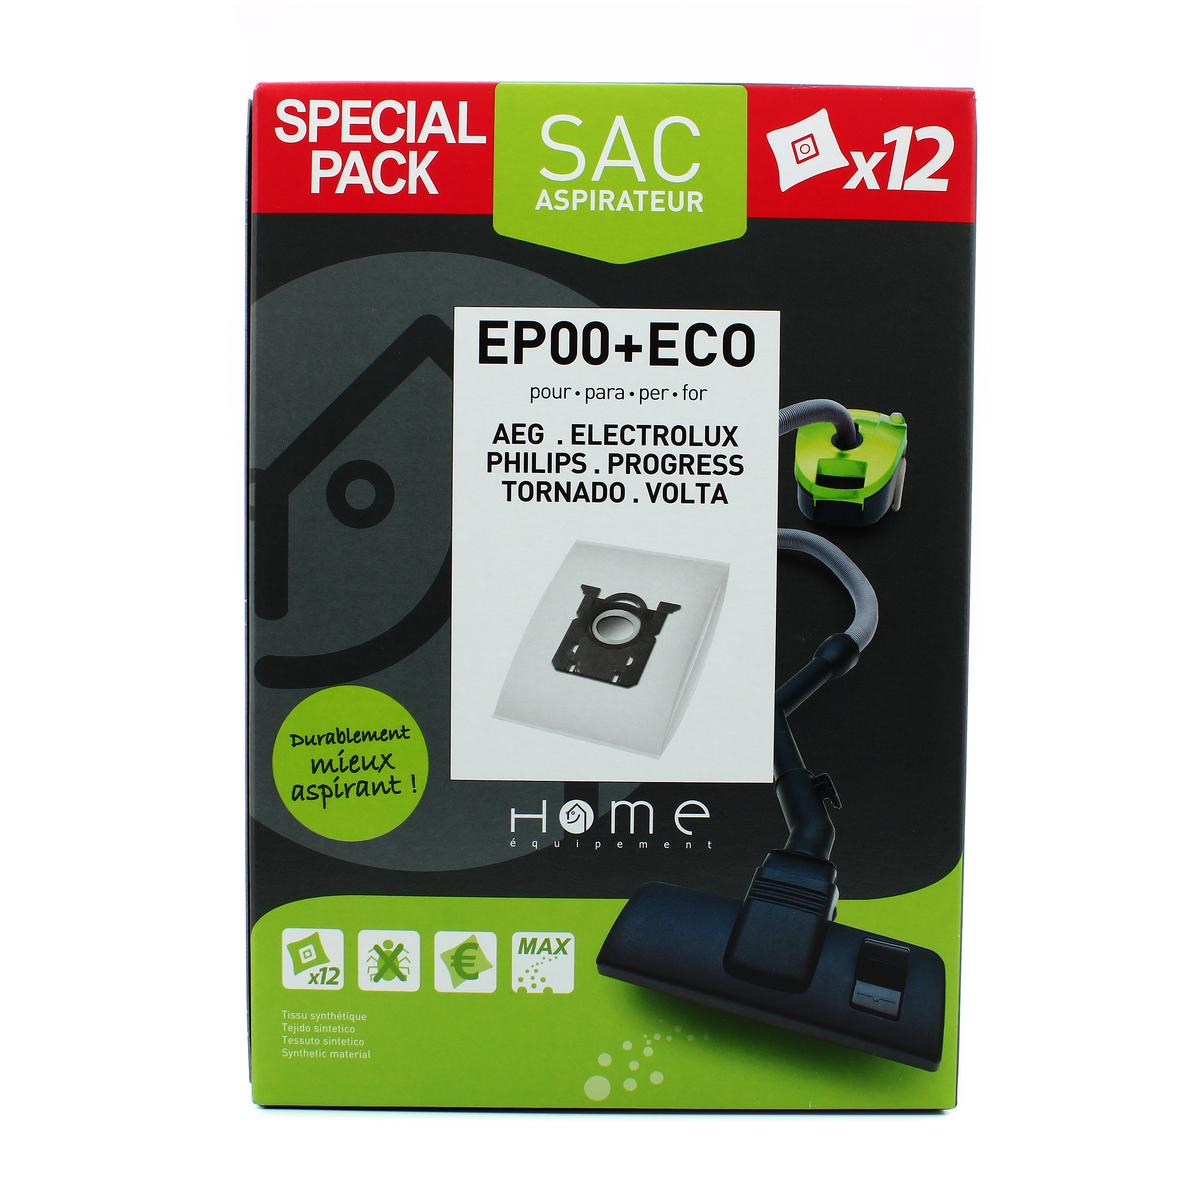 Acheter Promotion Home équipement Sacs aspirateur microfibres EP00+ECO